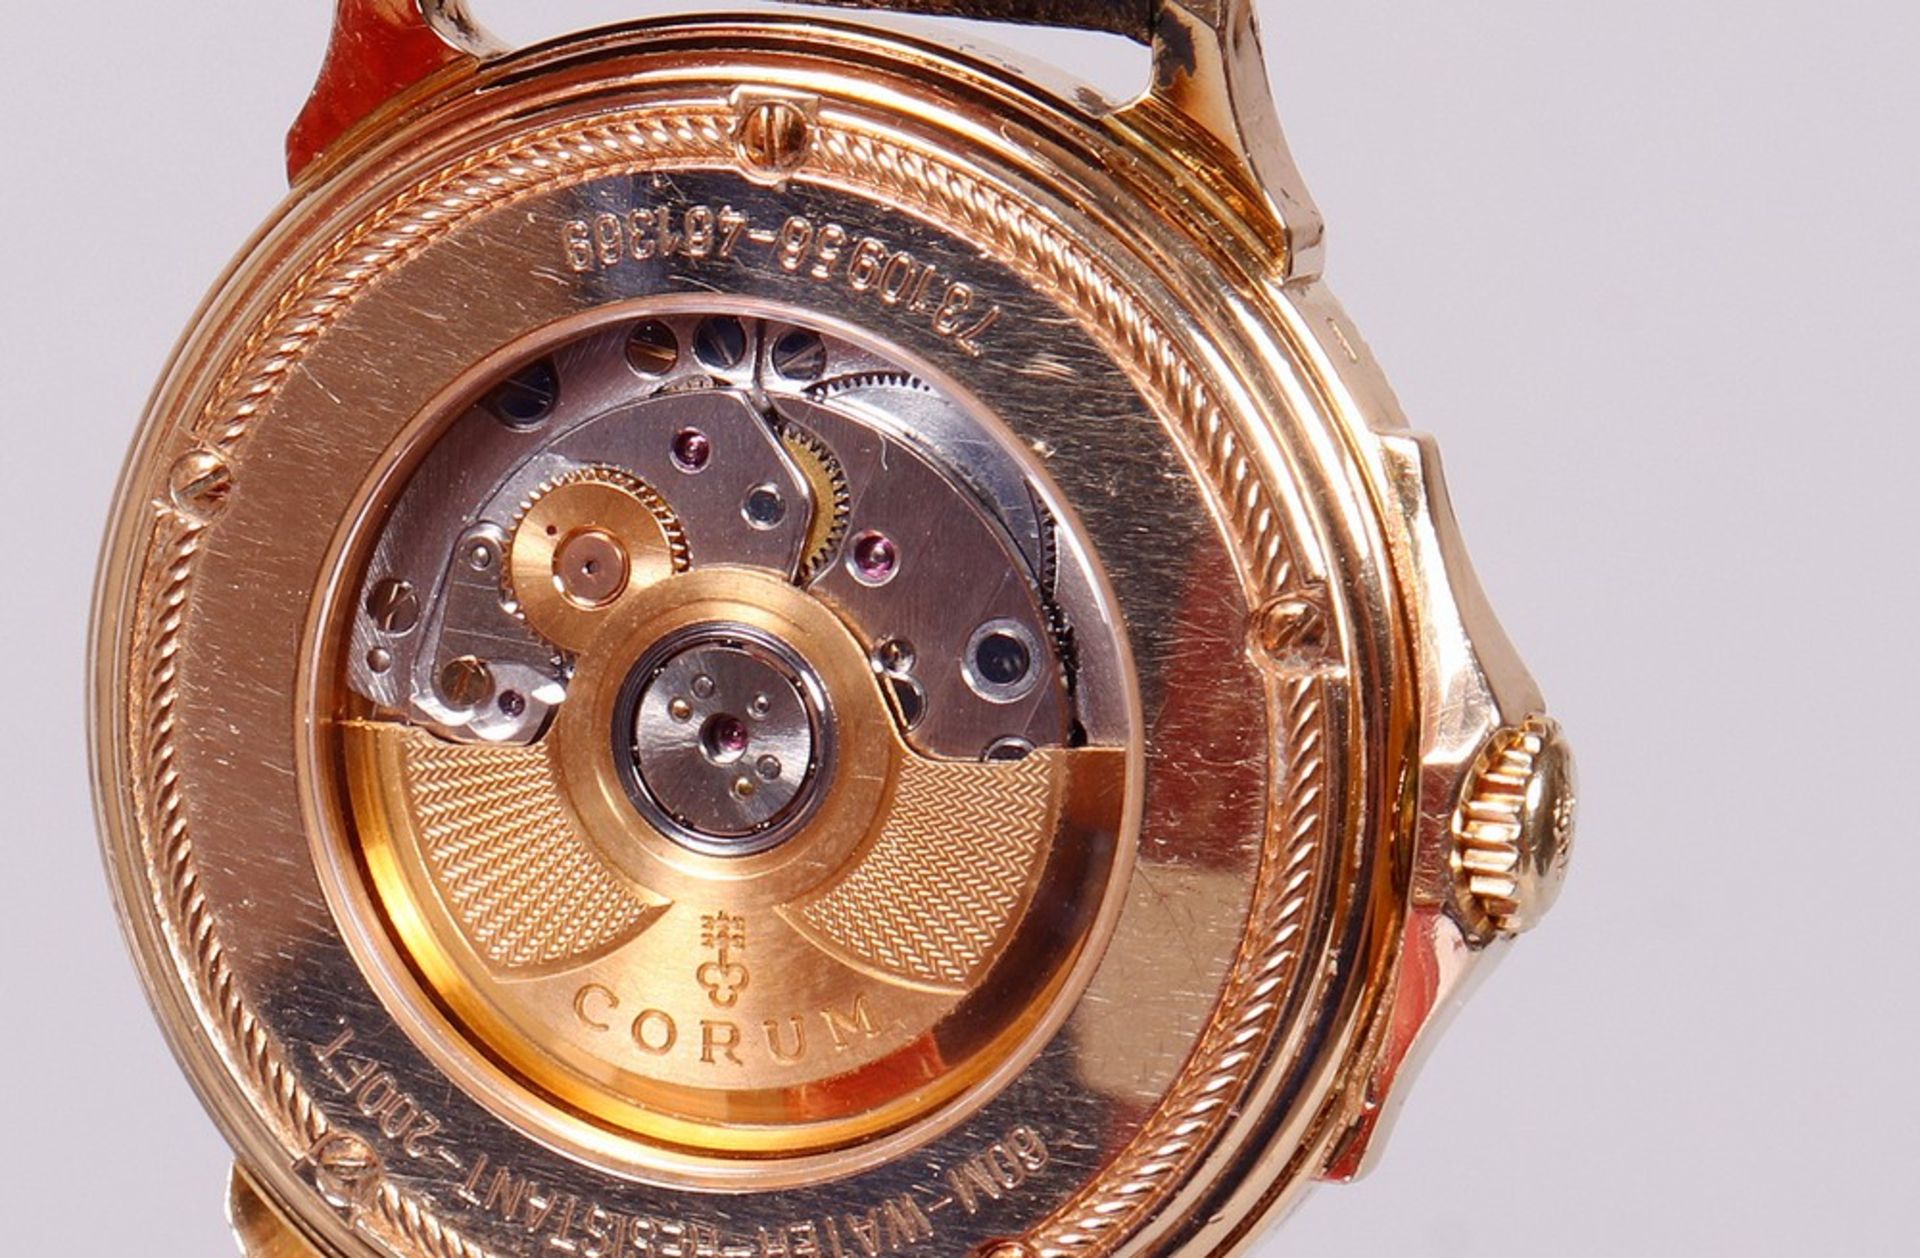 Men's wristwatch, 750 gold, Corum, Reserve de Marche automatic - Image 5 of 6